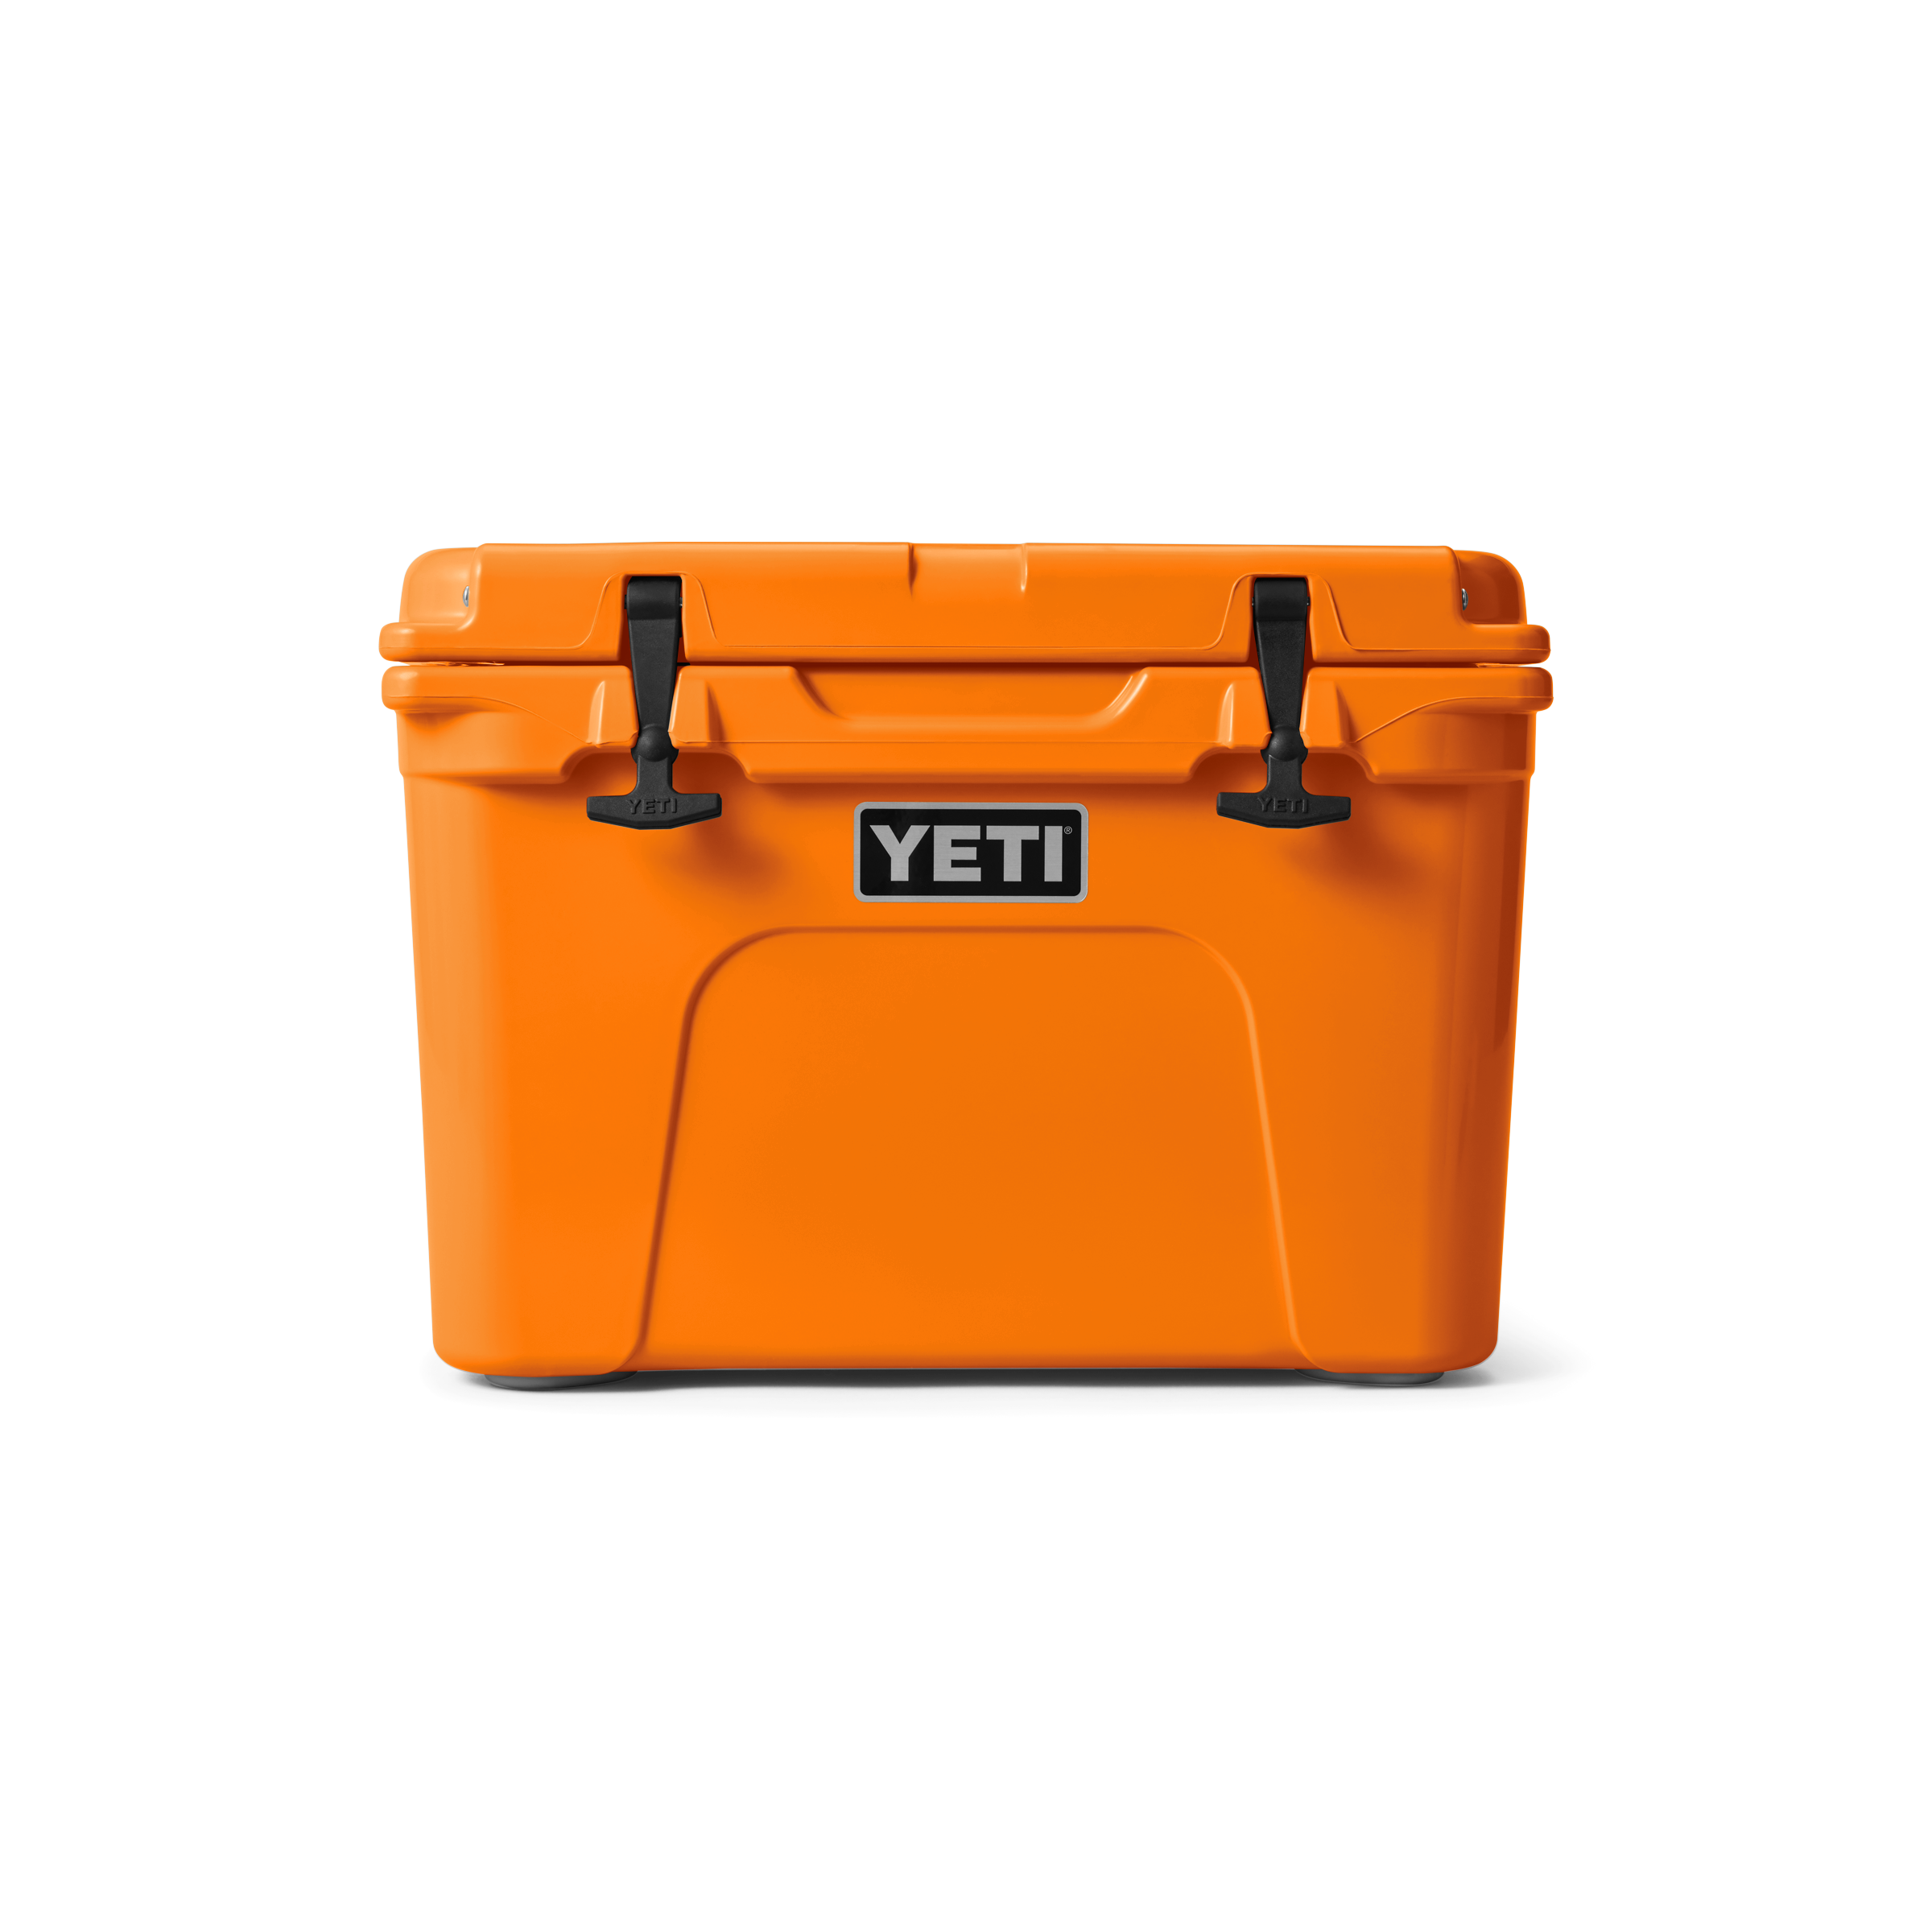 YETI® Tundra 35 Cool Box – YETI UK LIMITED